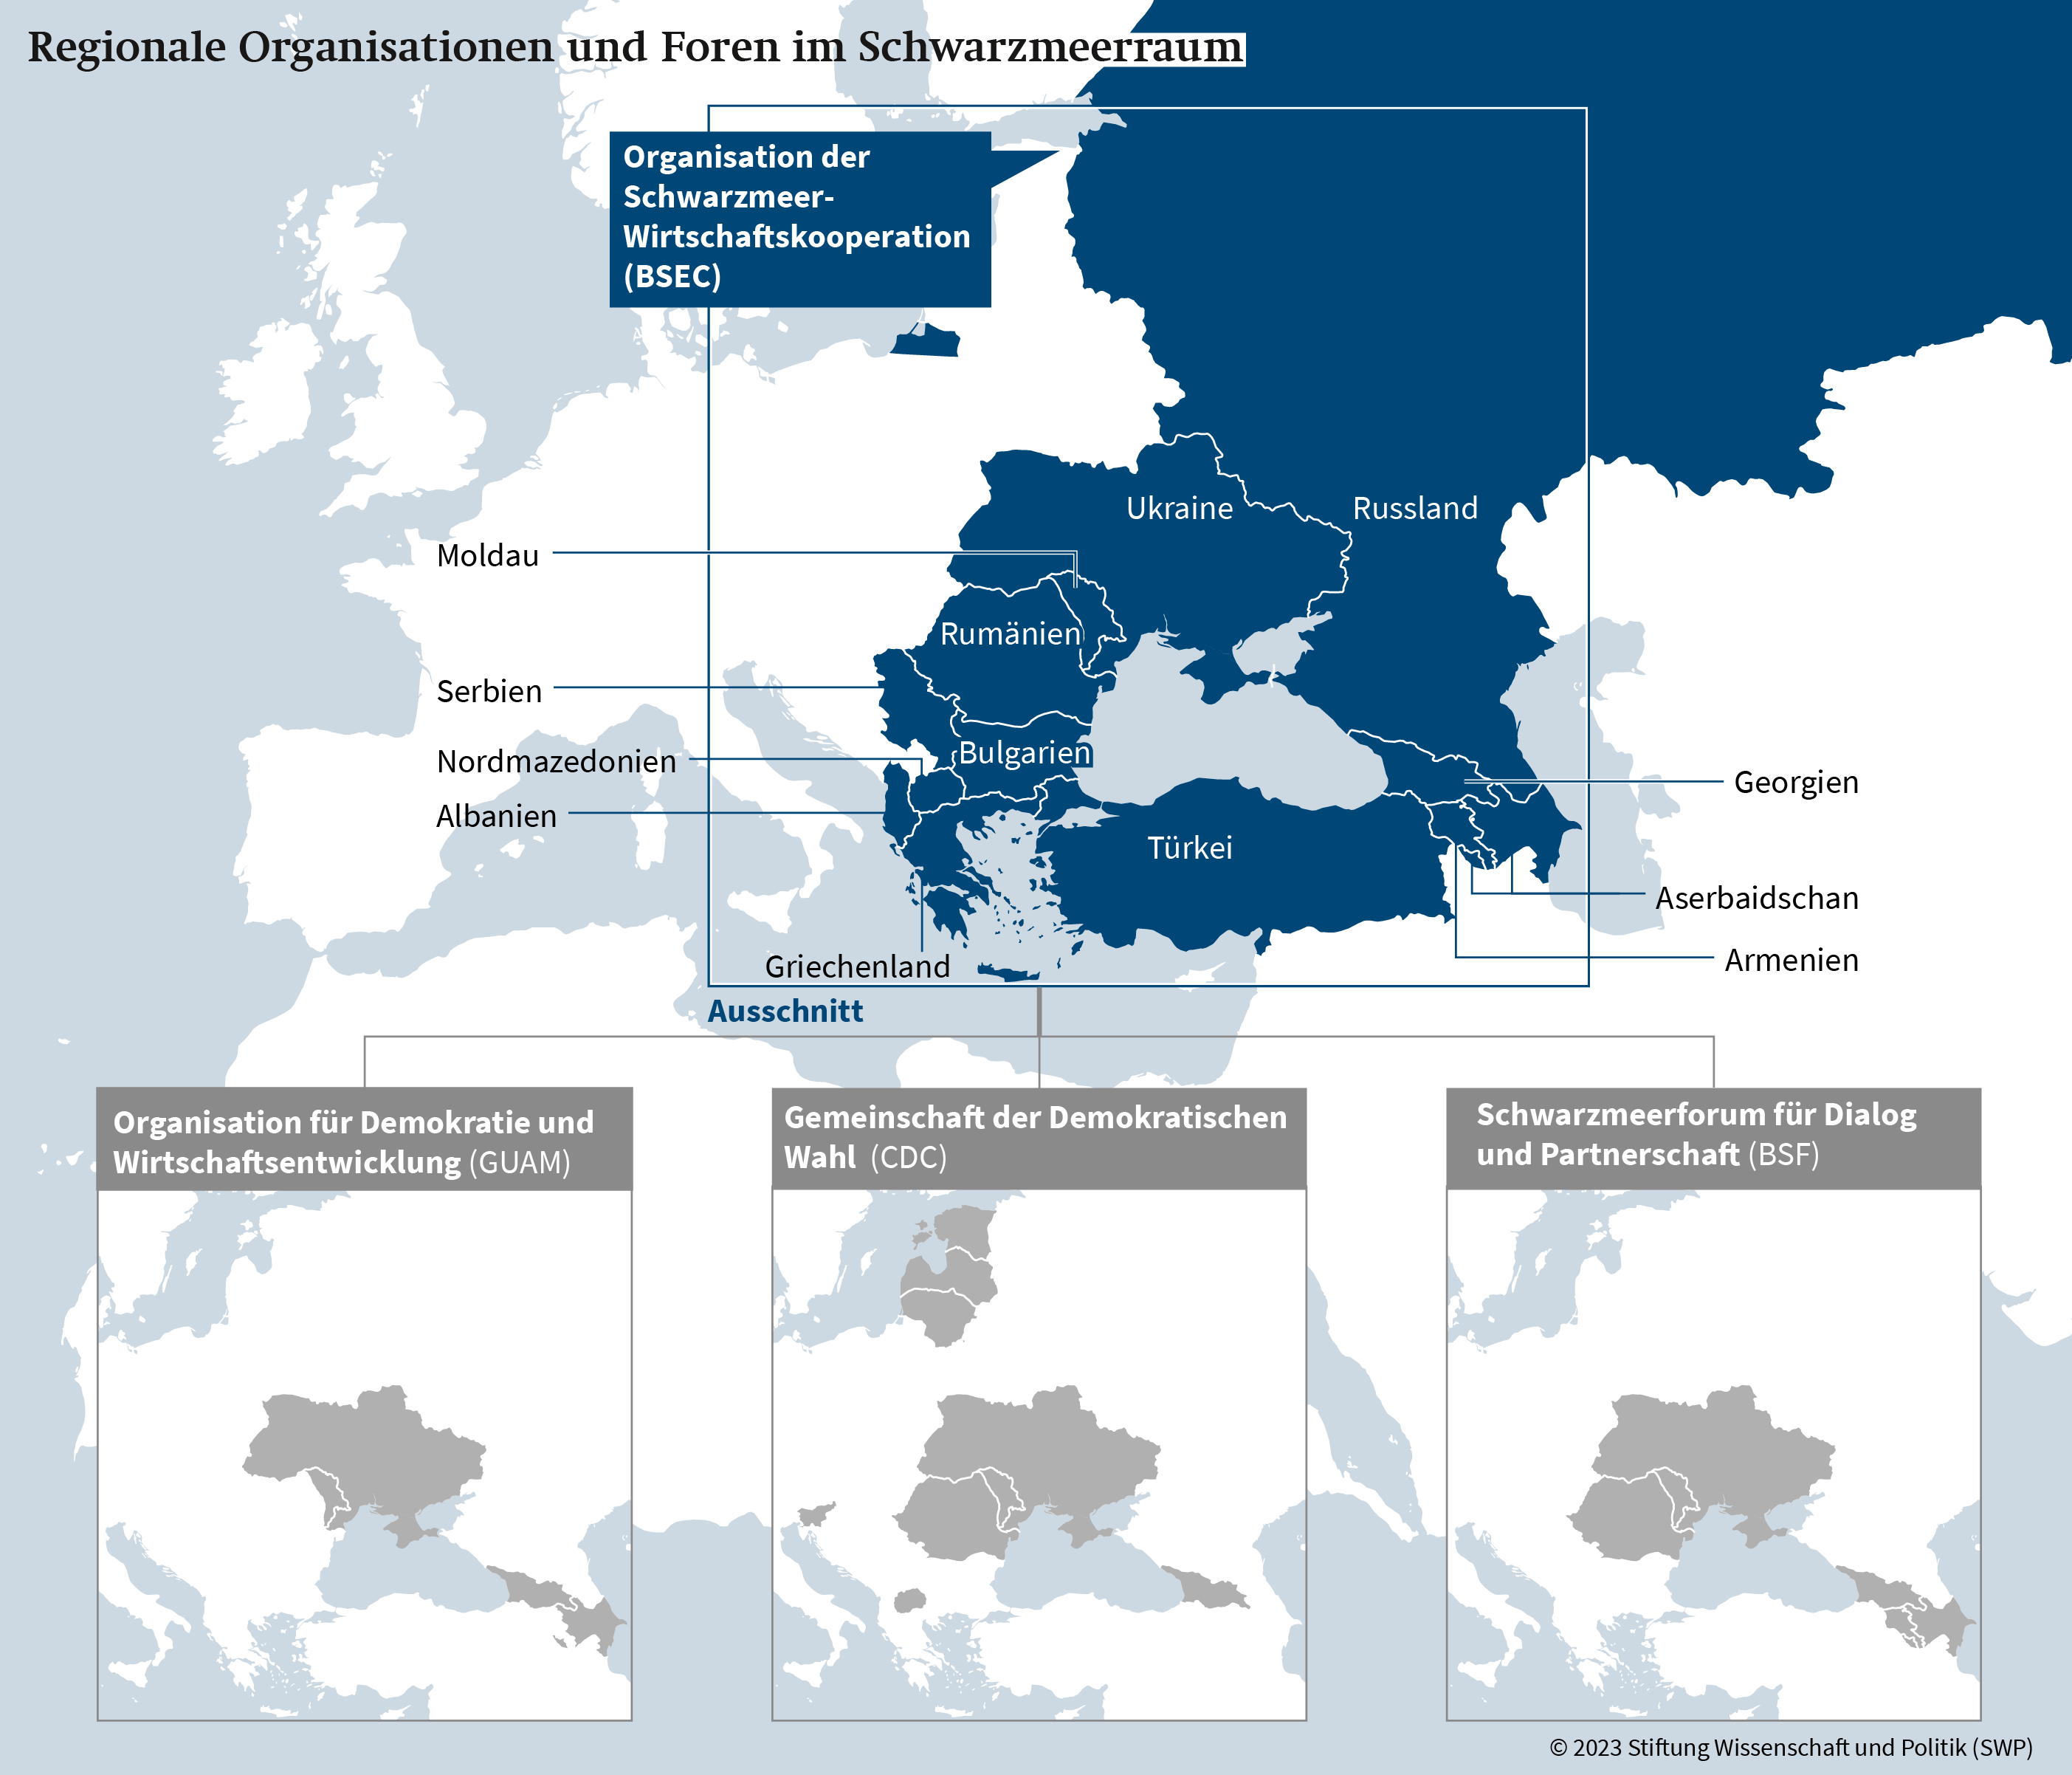 Karte 1: Regionale Organisationen und Foren im Schwarzmeerraum